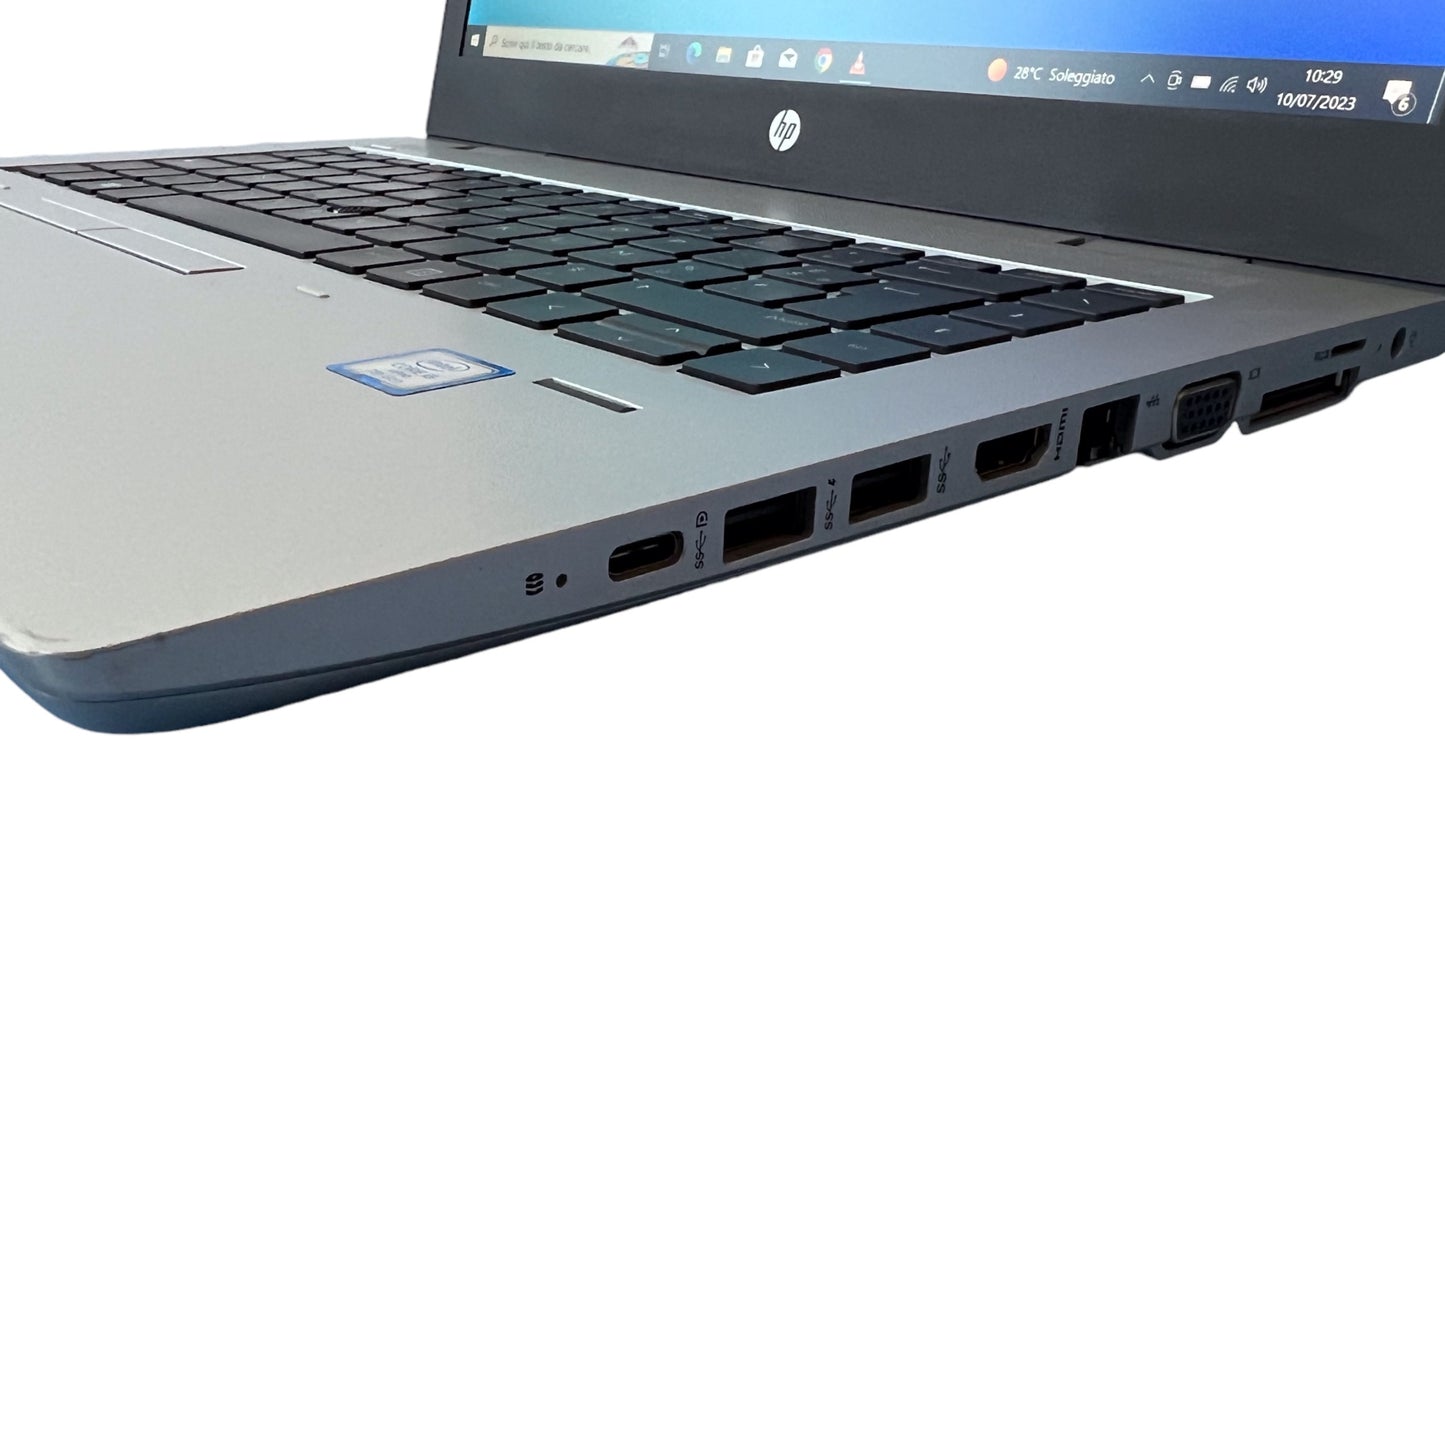 HP Probook 640 g4 con Intel Core i5-7300u, 2380717R4